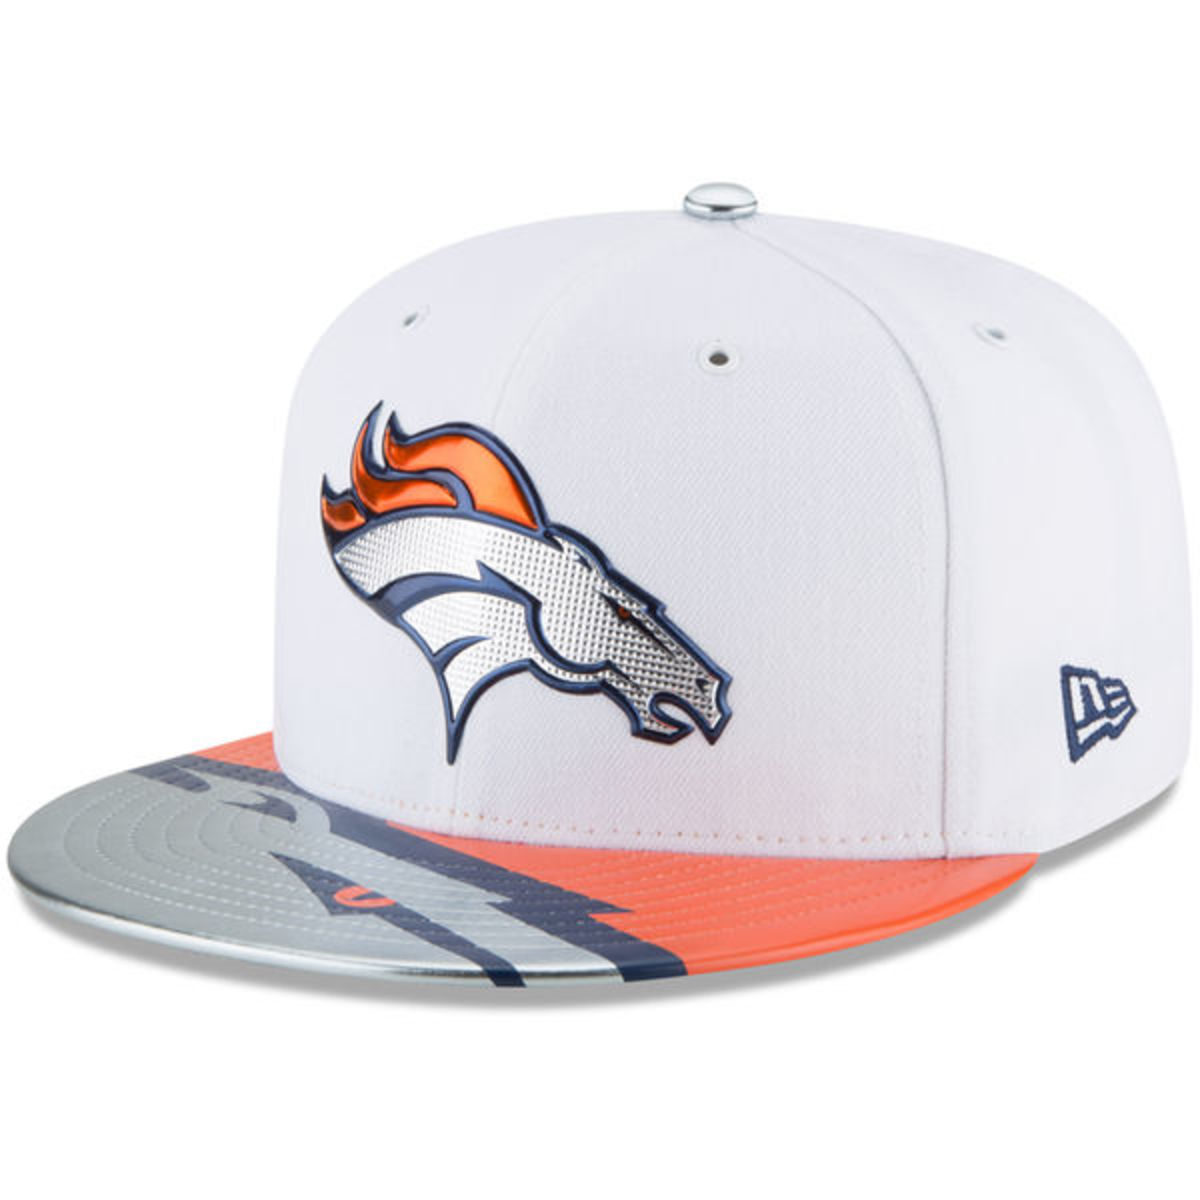 NHL Draft Hats, 2023 NHL Draft Hats, NHL Draft Headwear